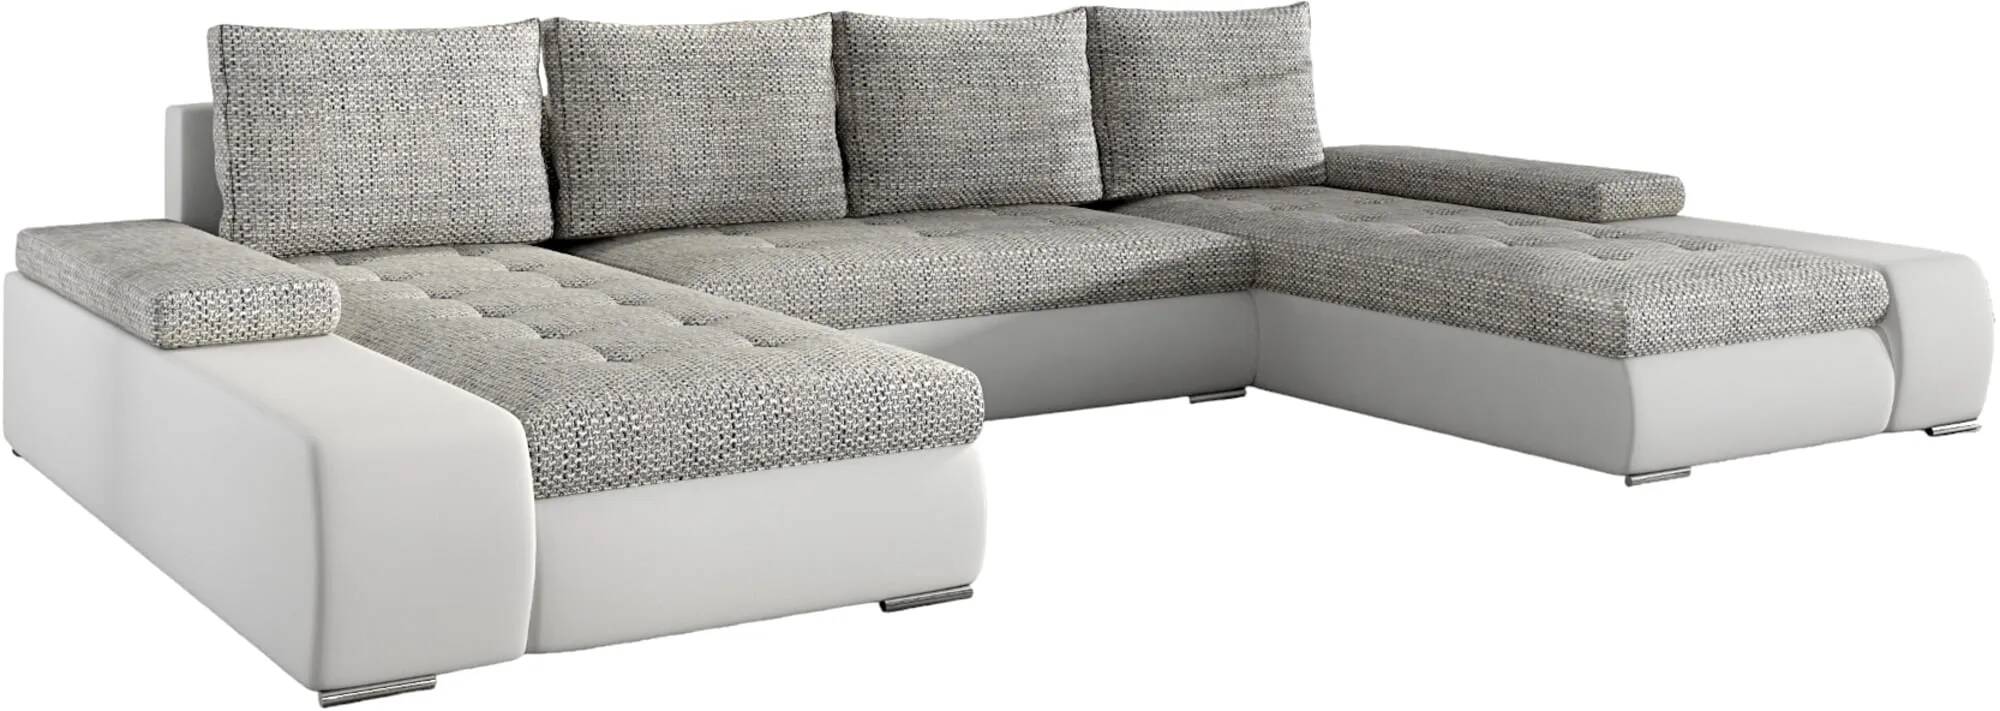 Canapé d'angle convertible en tissu chiné gris clair et simili cuir blanc